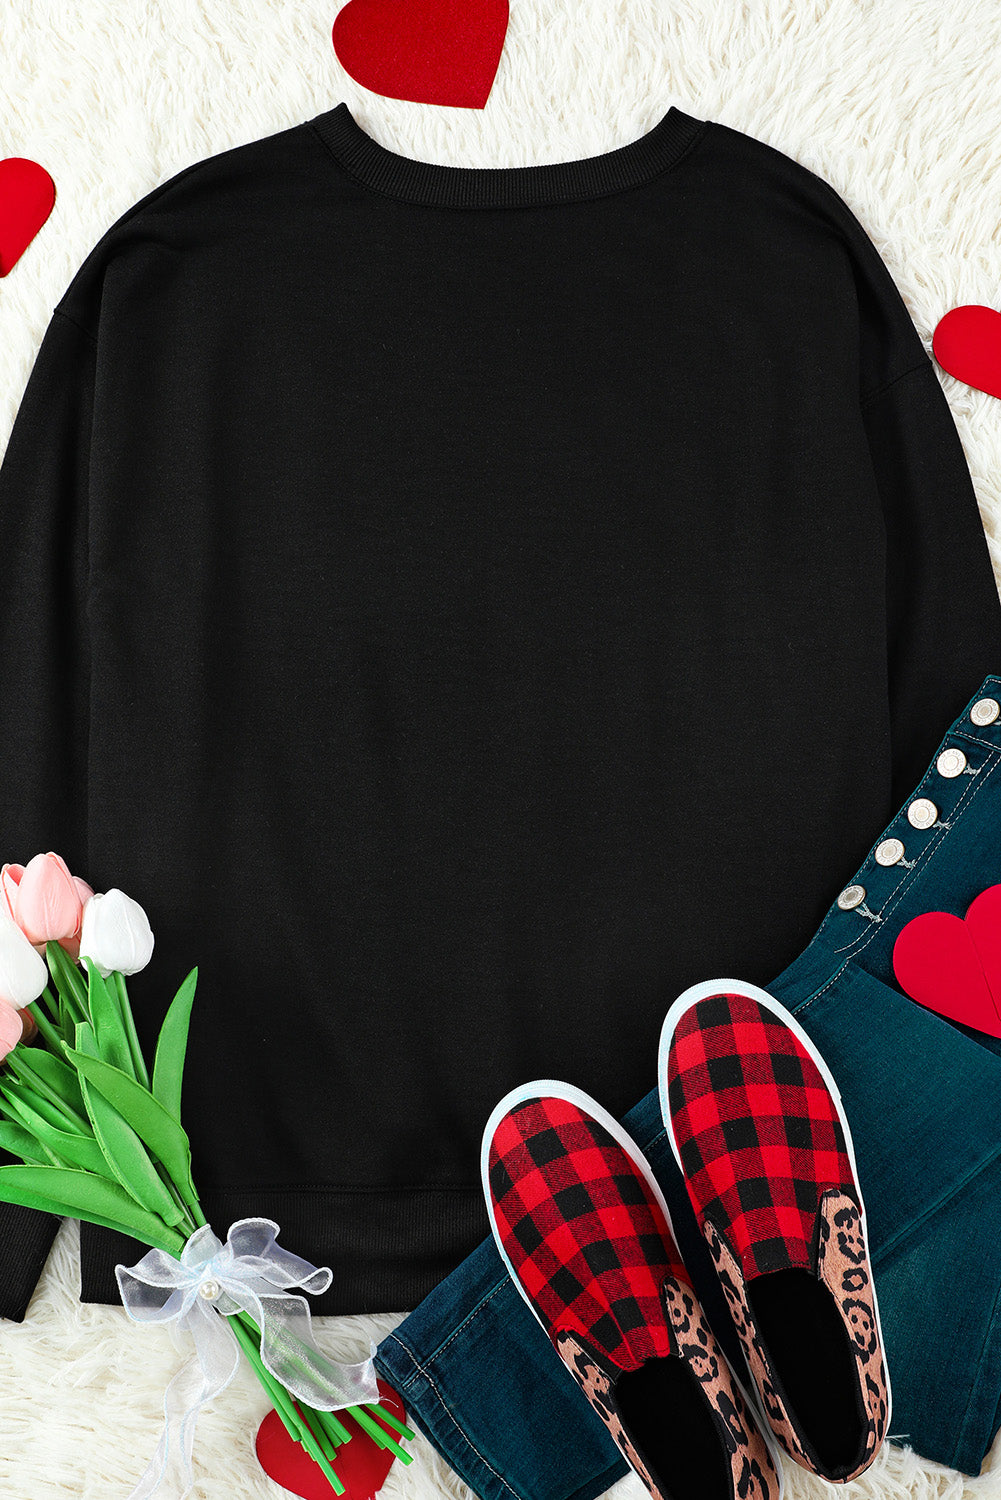 Black Happy Valentine's Day Graphic Embroidered Sweatshirt Graphic Sweatshirts JT's Designer Fashion